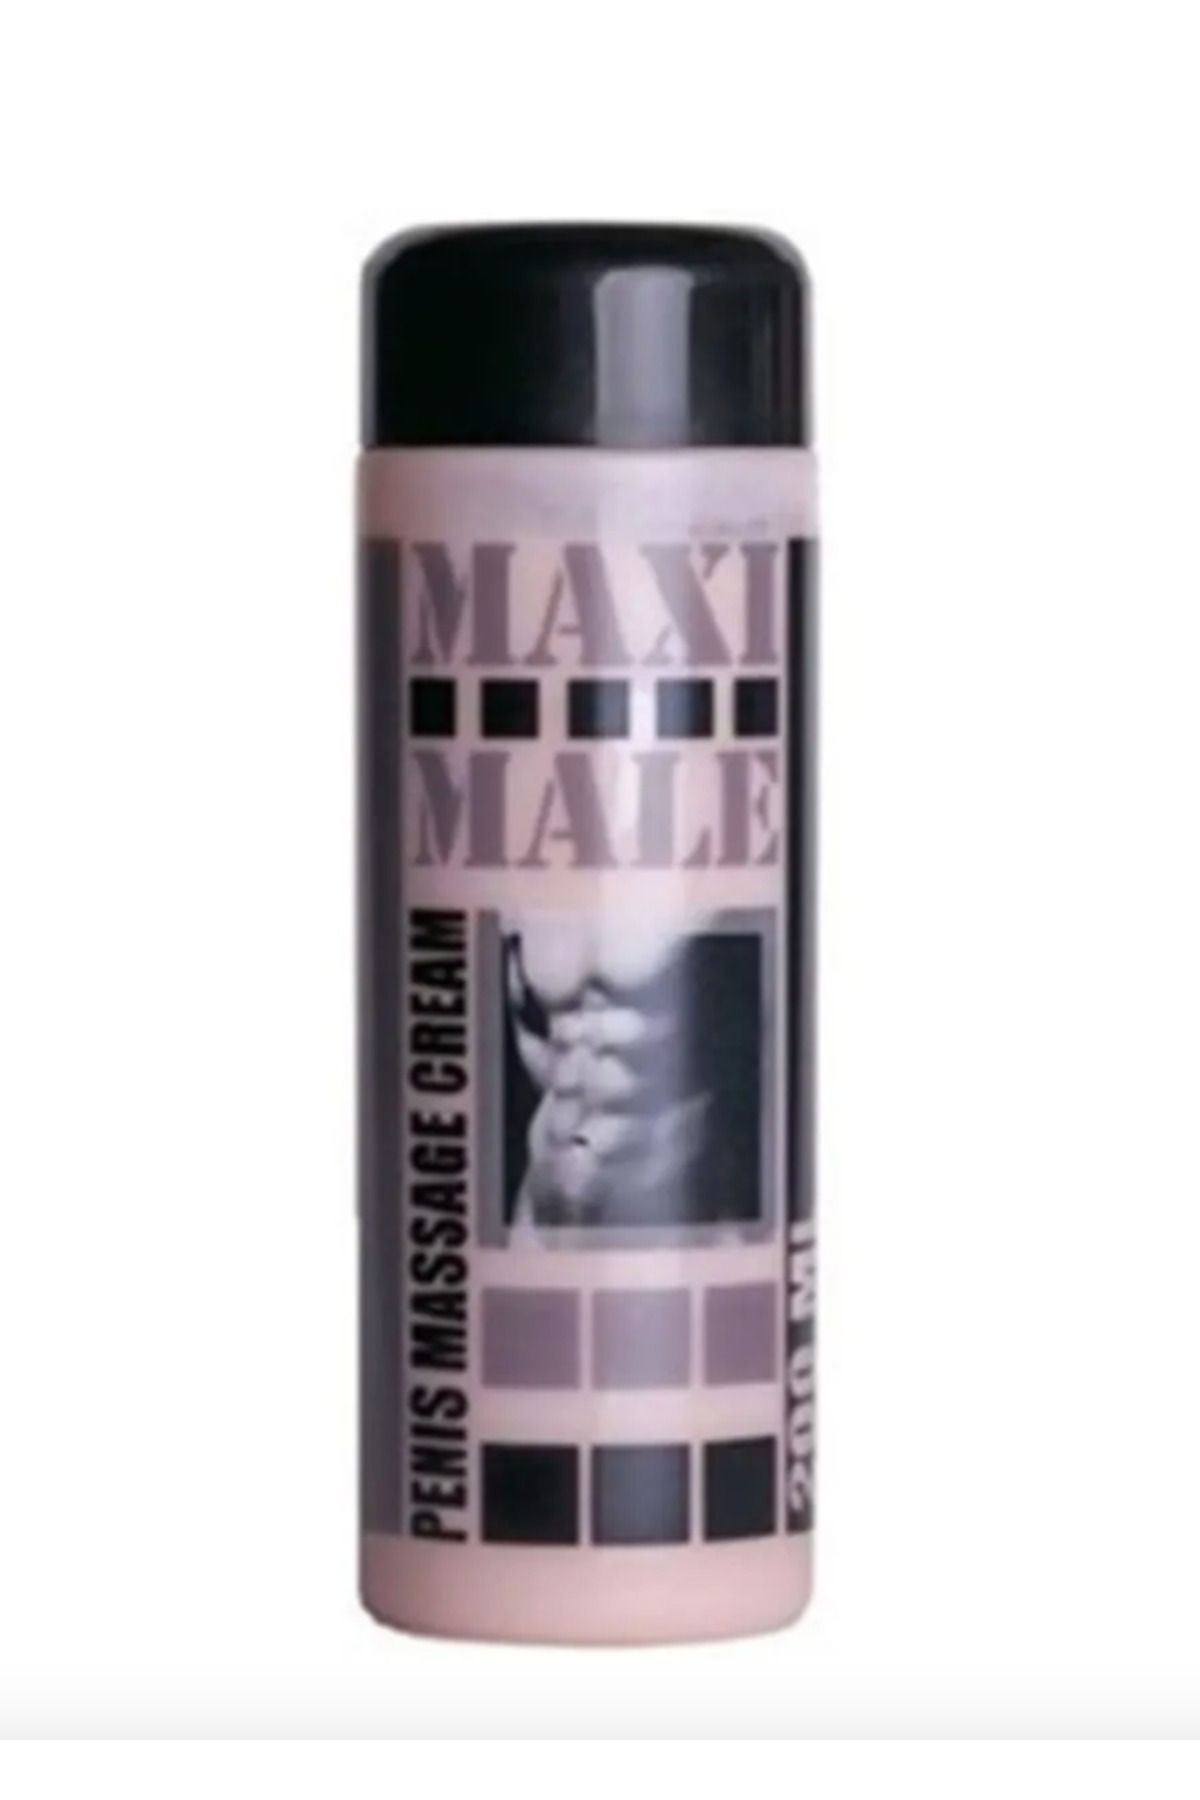 Maxi Male Erkeklere Özel Büyütme Ürünü / Maxi Male Men's Enlarger Product